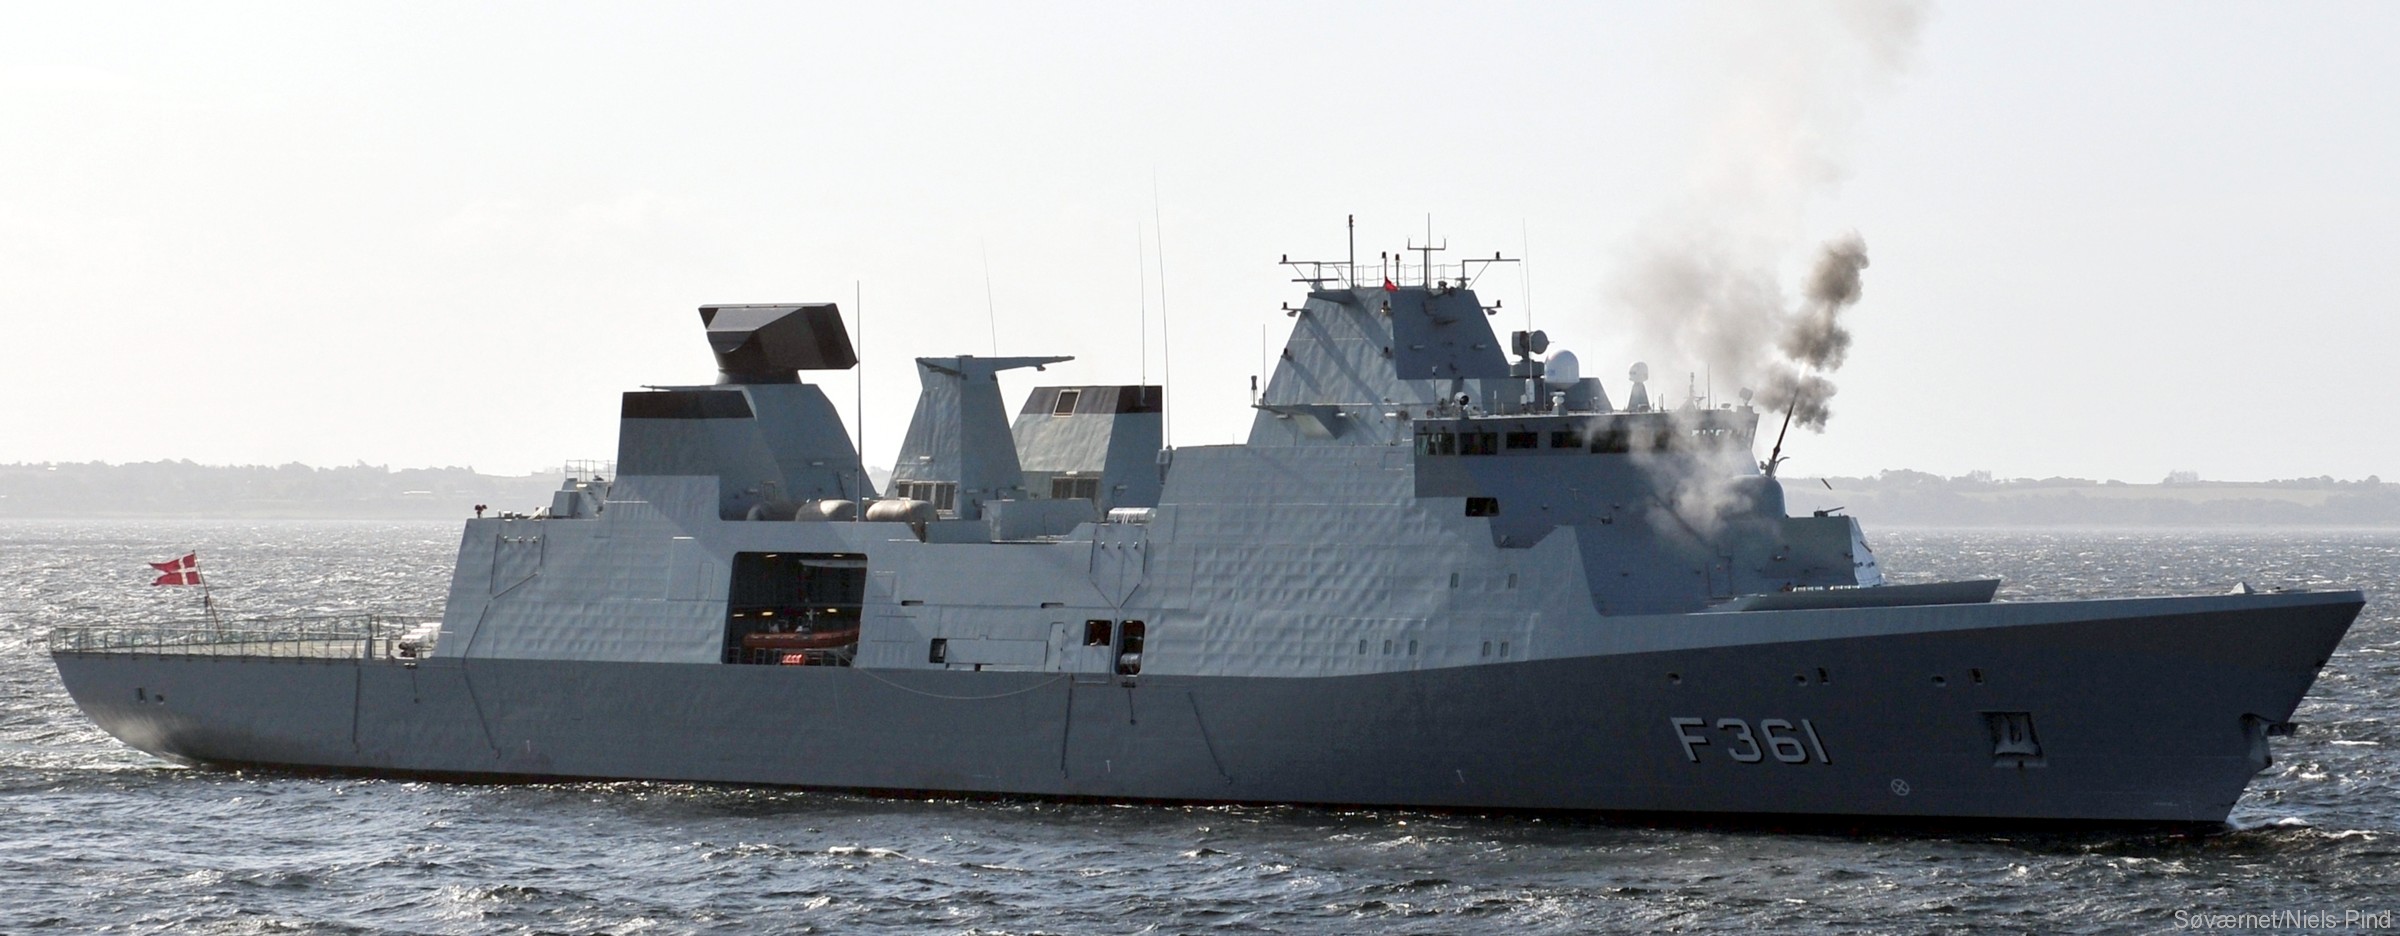 f-361 hdms iver huitfeldt class guided missile frigate ffg royal danish navy 32 oto melara 76/62 gun fire exercise